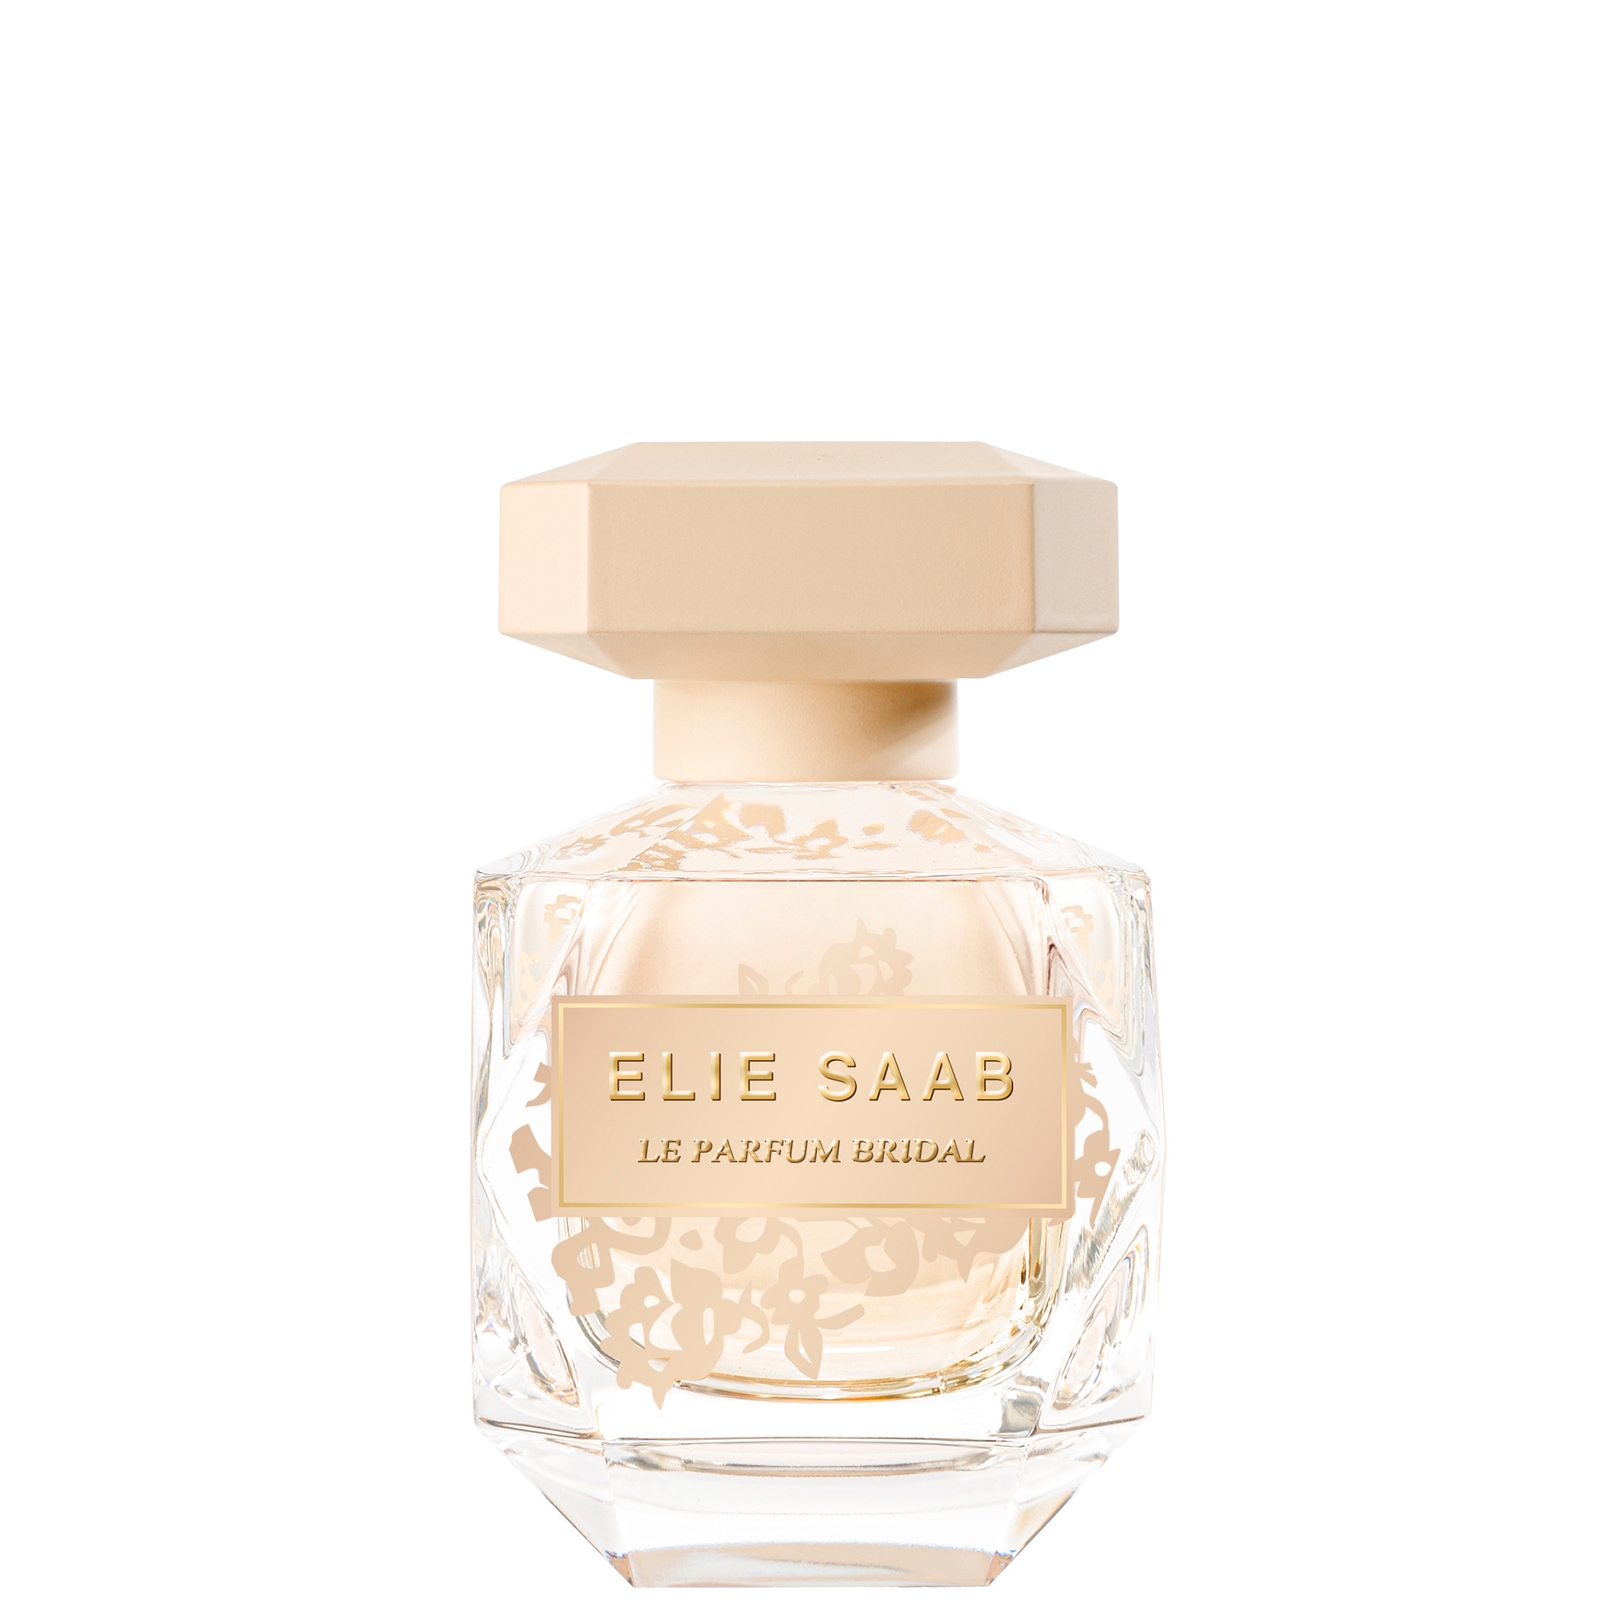 Image of Elie Saab Le Parfum Bridal Eau de Parfum Spray 50ml